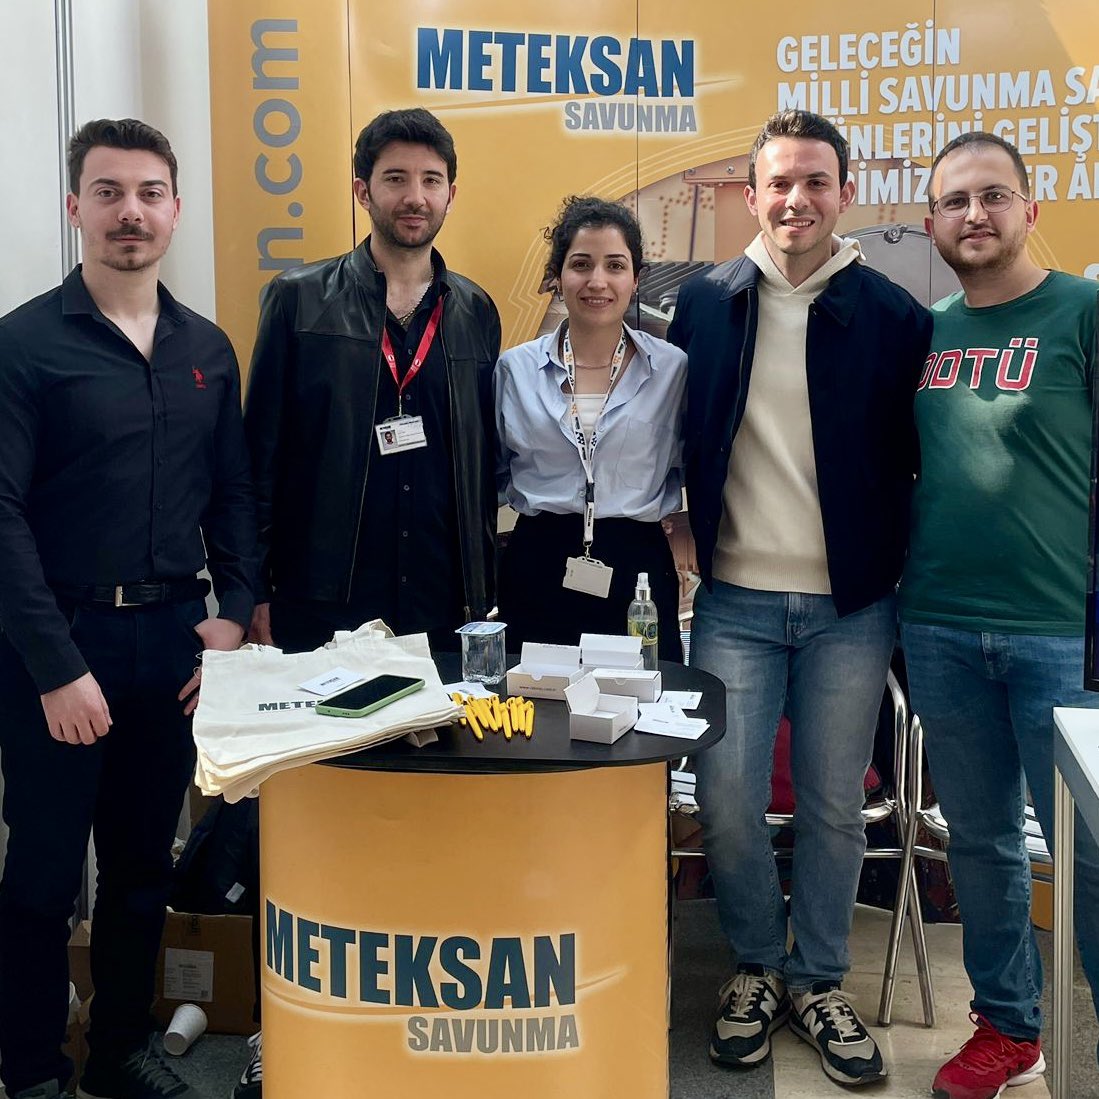 Meteksan Savunma olarak çalışma arkadaşlarımız ile birlikte Bilkent Üniversitesi, Hacettepe Üniversitesi ve Orta Doğu Teknik Üniversitesi Kariyer Fuarlarında genç yetenekler ile bir araya geldik. Şirketimize ilgi gösteren tüm öğrencilere teşekkür eder, sektörümüzün potansiyel